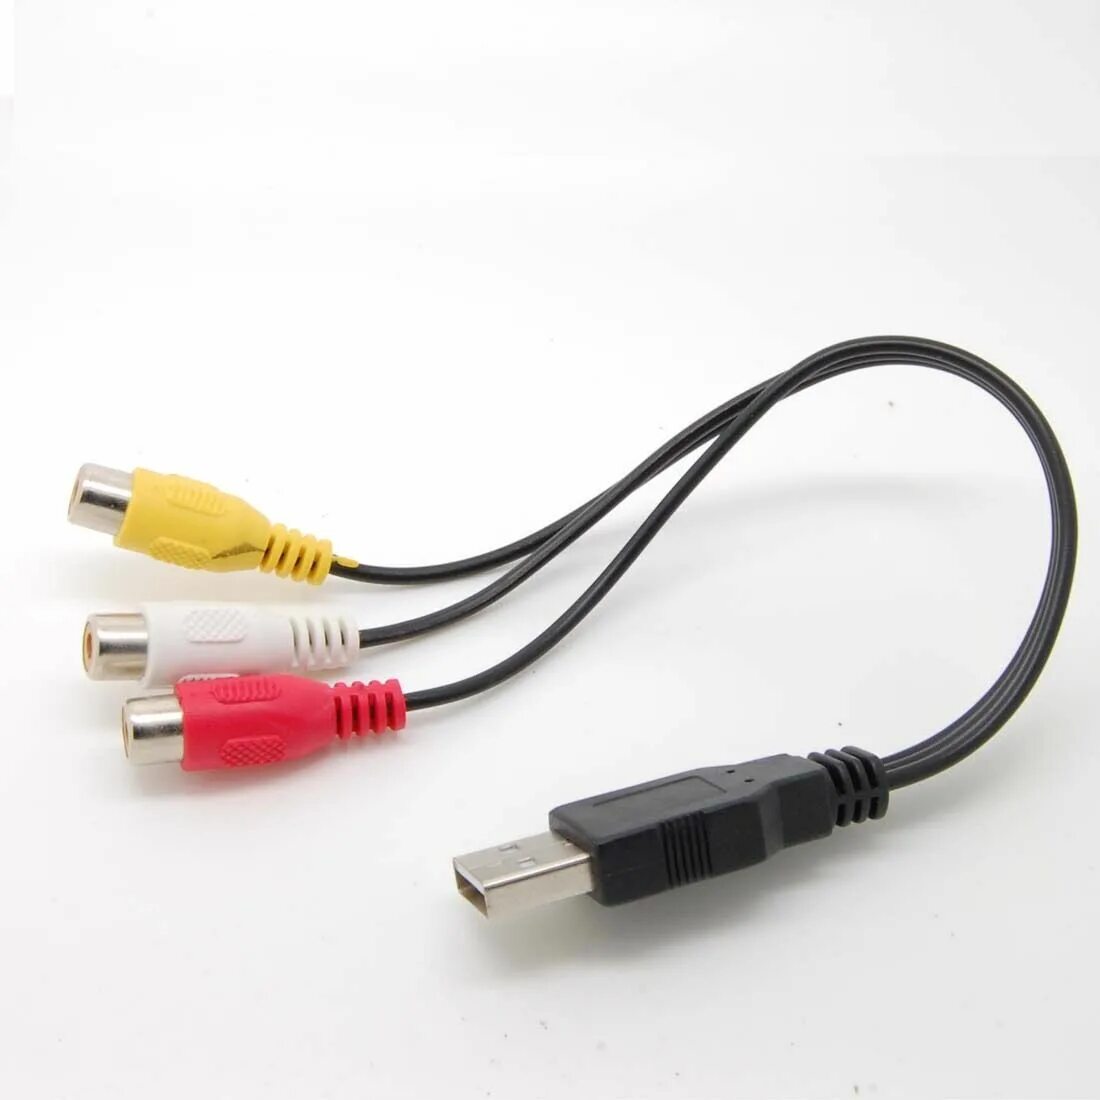 Переходник для подключения телефона. Адаптер 3rca - USB переходник. Кабель USB 3rca кабель USB. Кабель USB-3rca (тюльпан). USB штекер а-3 RCA av a/v ТВ адаптер.